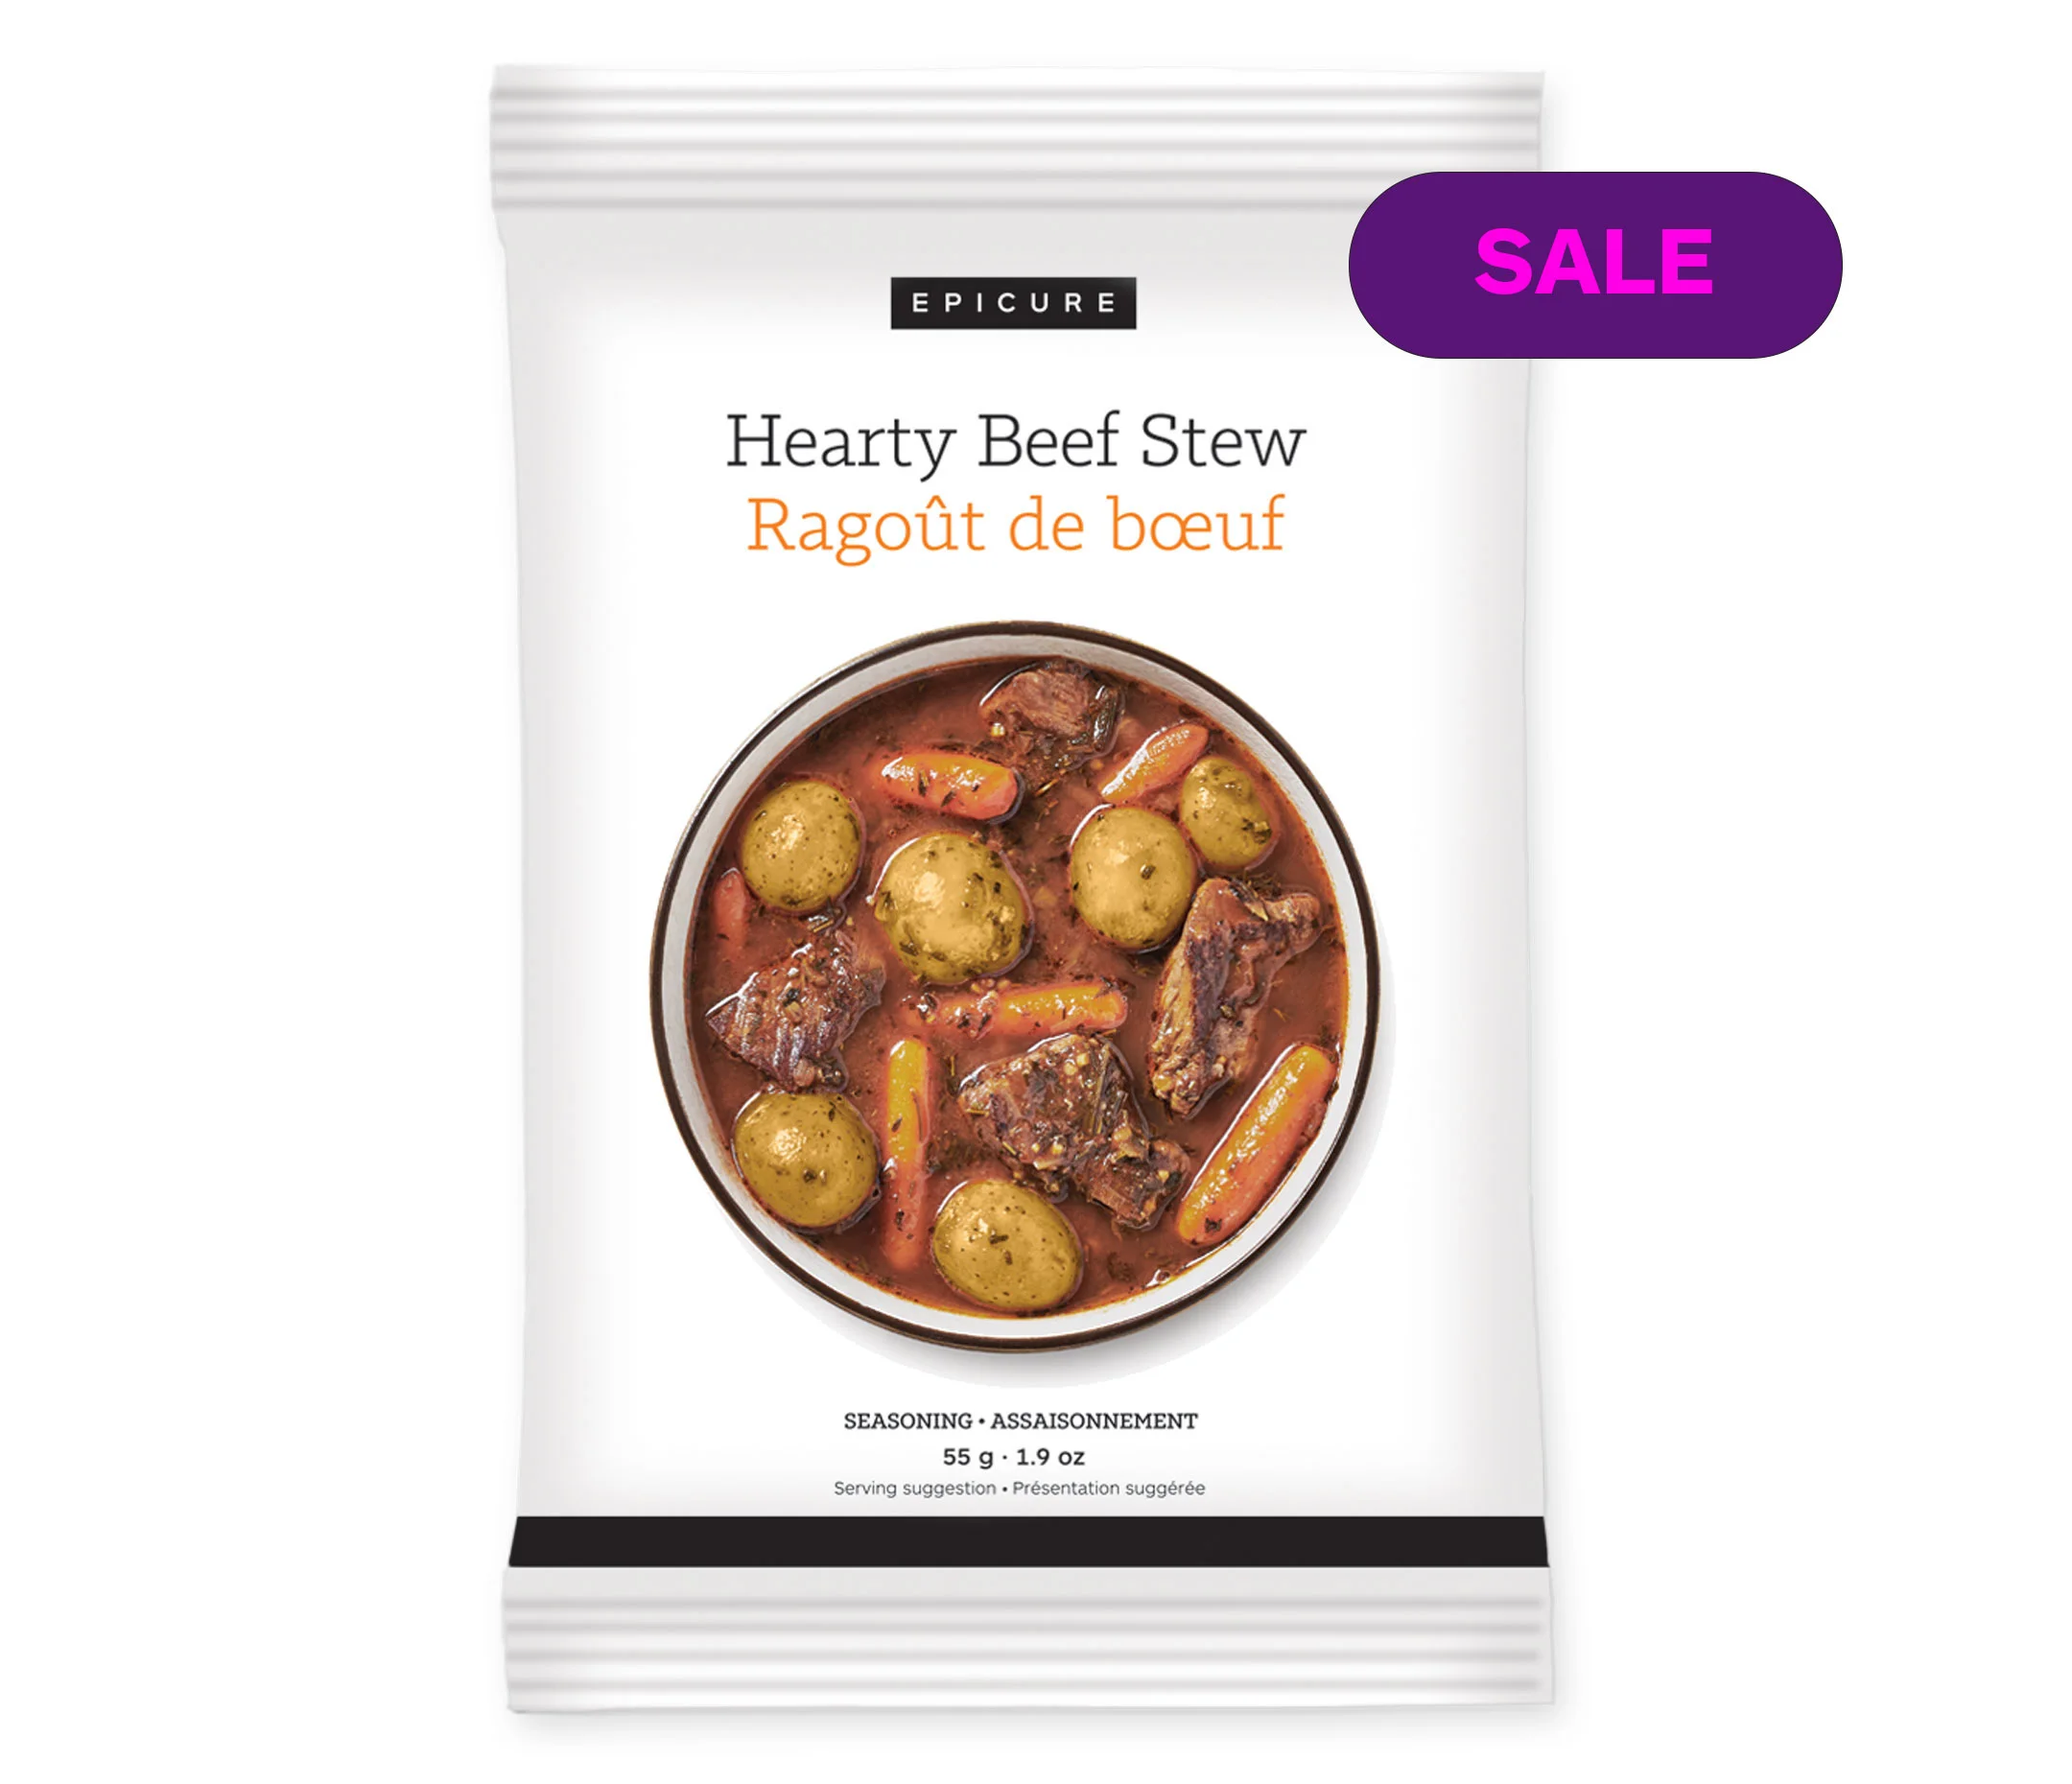 Hearty Beef Stew Seasoning (Pack of 3)